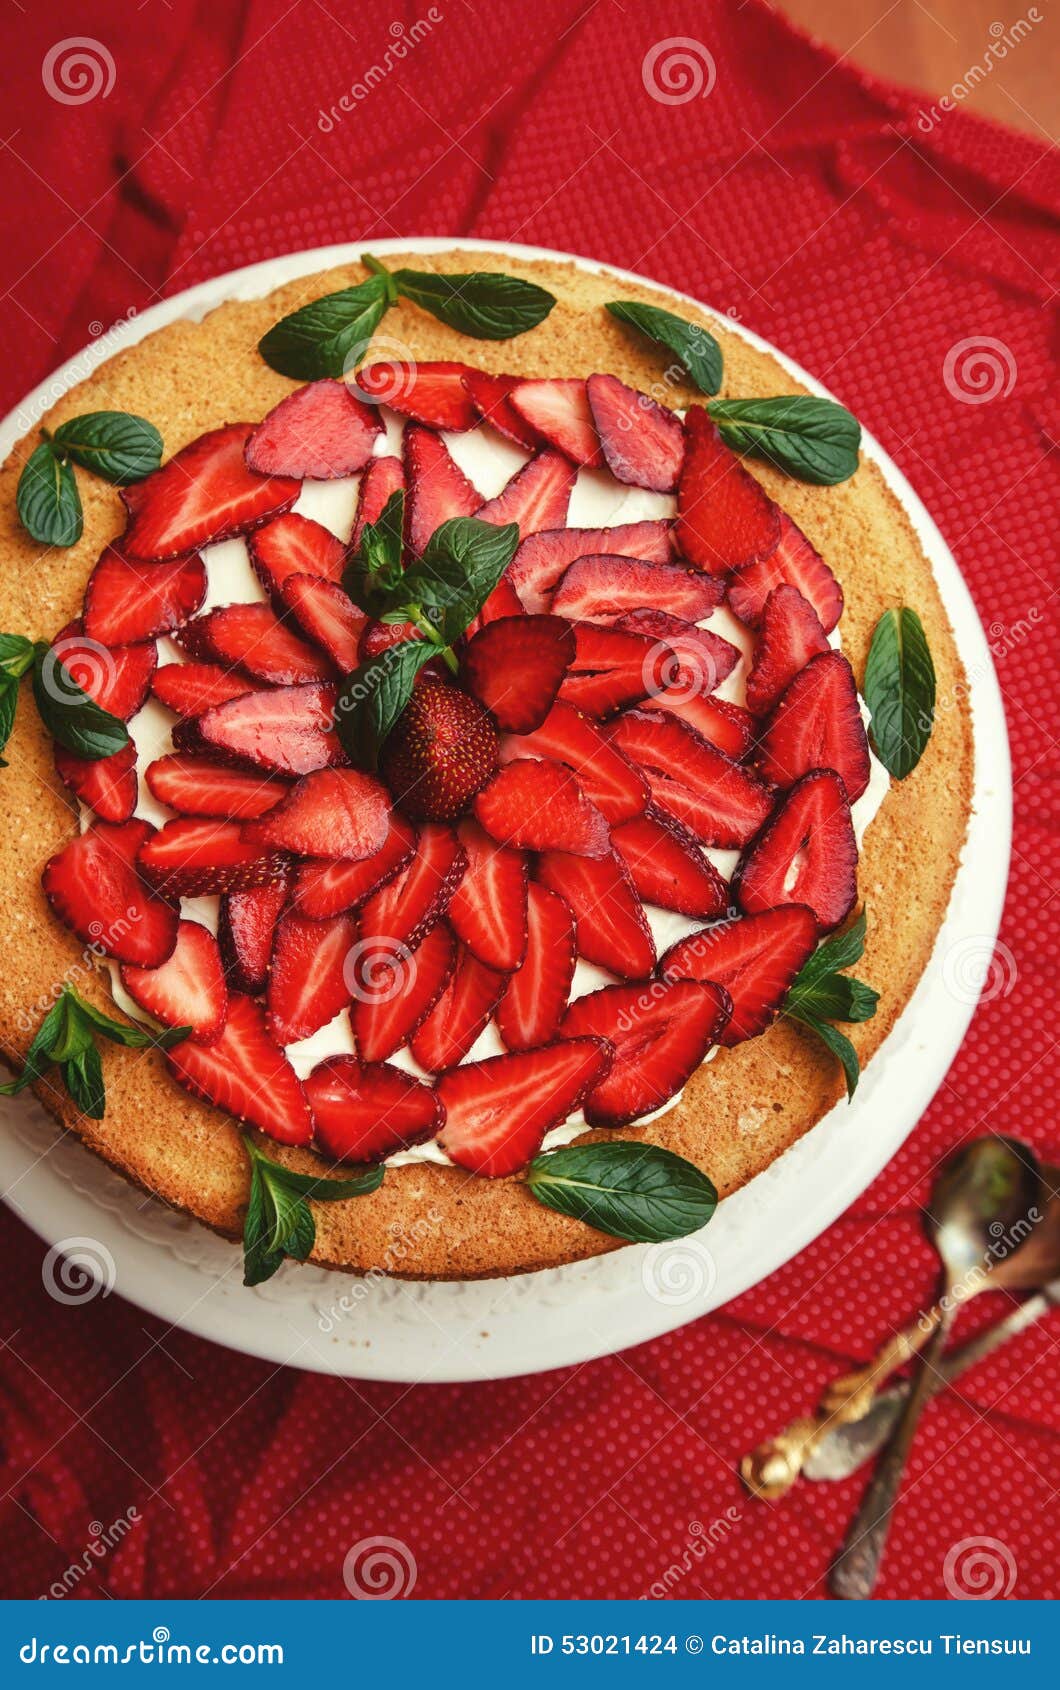 巧克力草莓芝士蛋糕怎么做_巧克力草莓芝士蛋糕的做法_贝尔烘焙_豆果美食